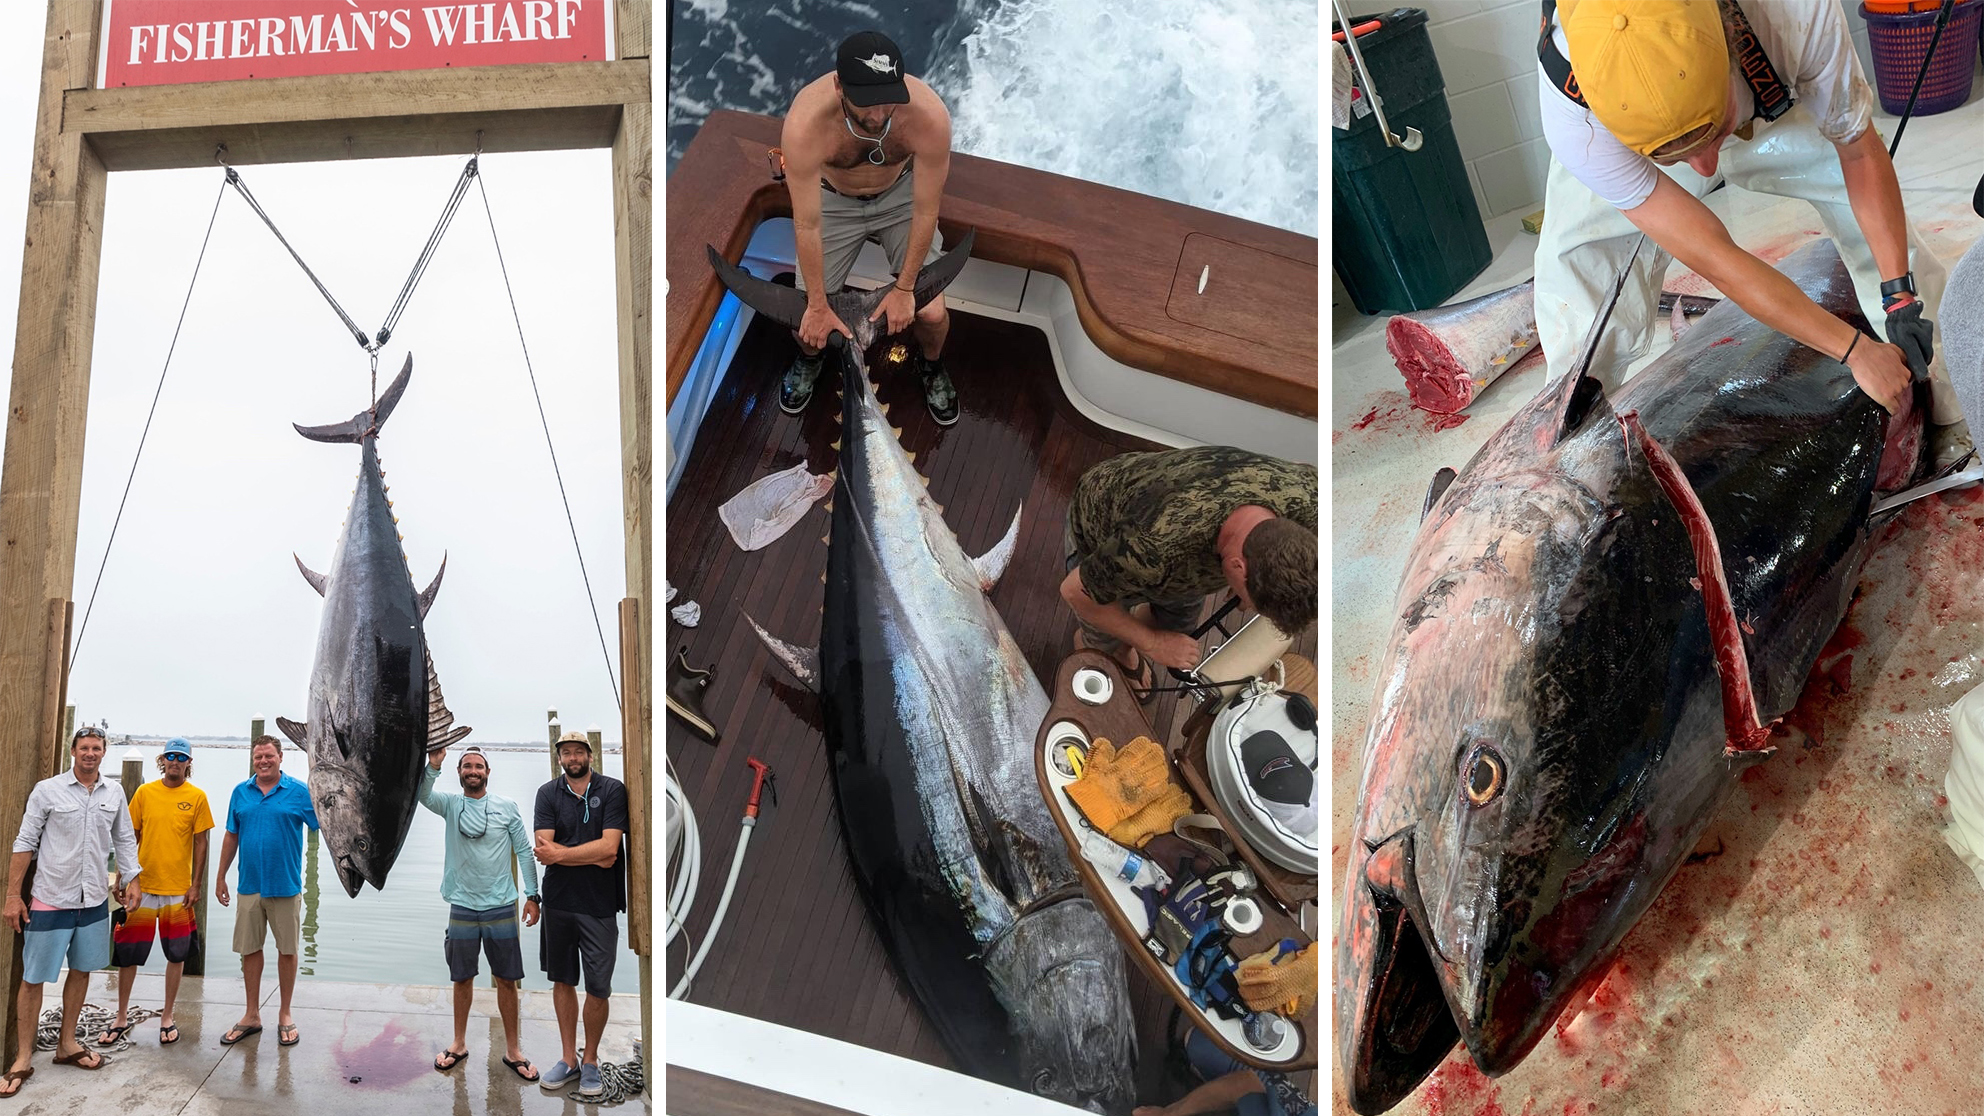 world record blackfin tuna